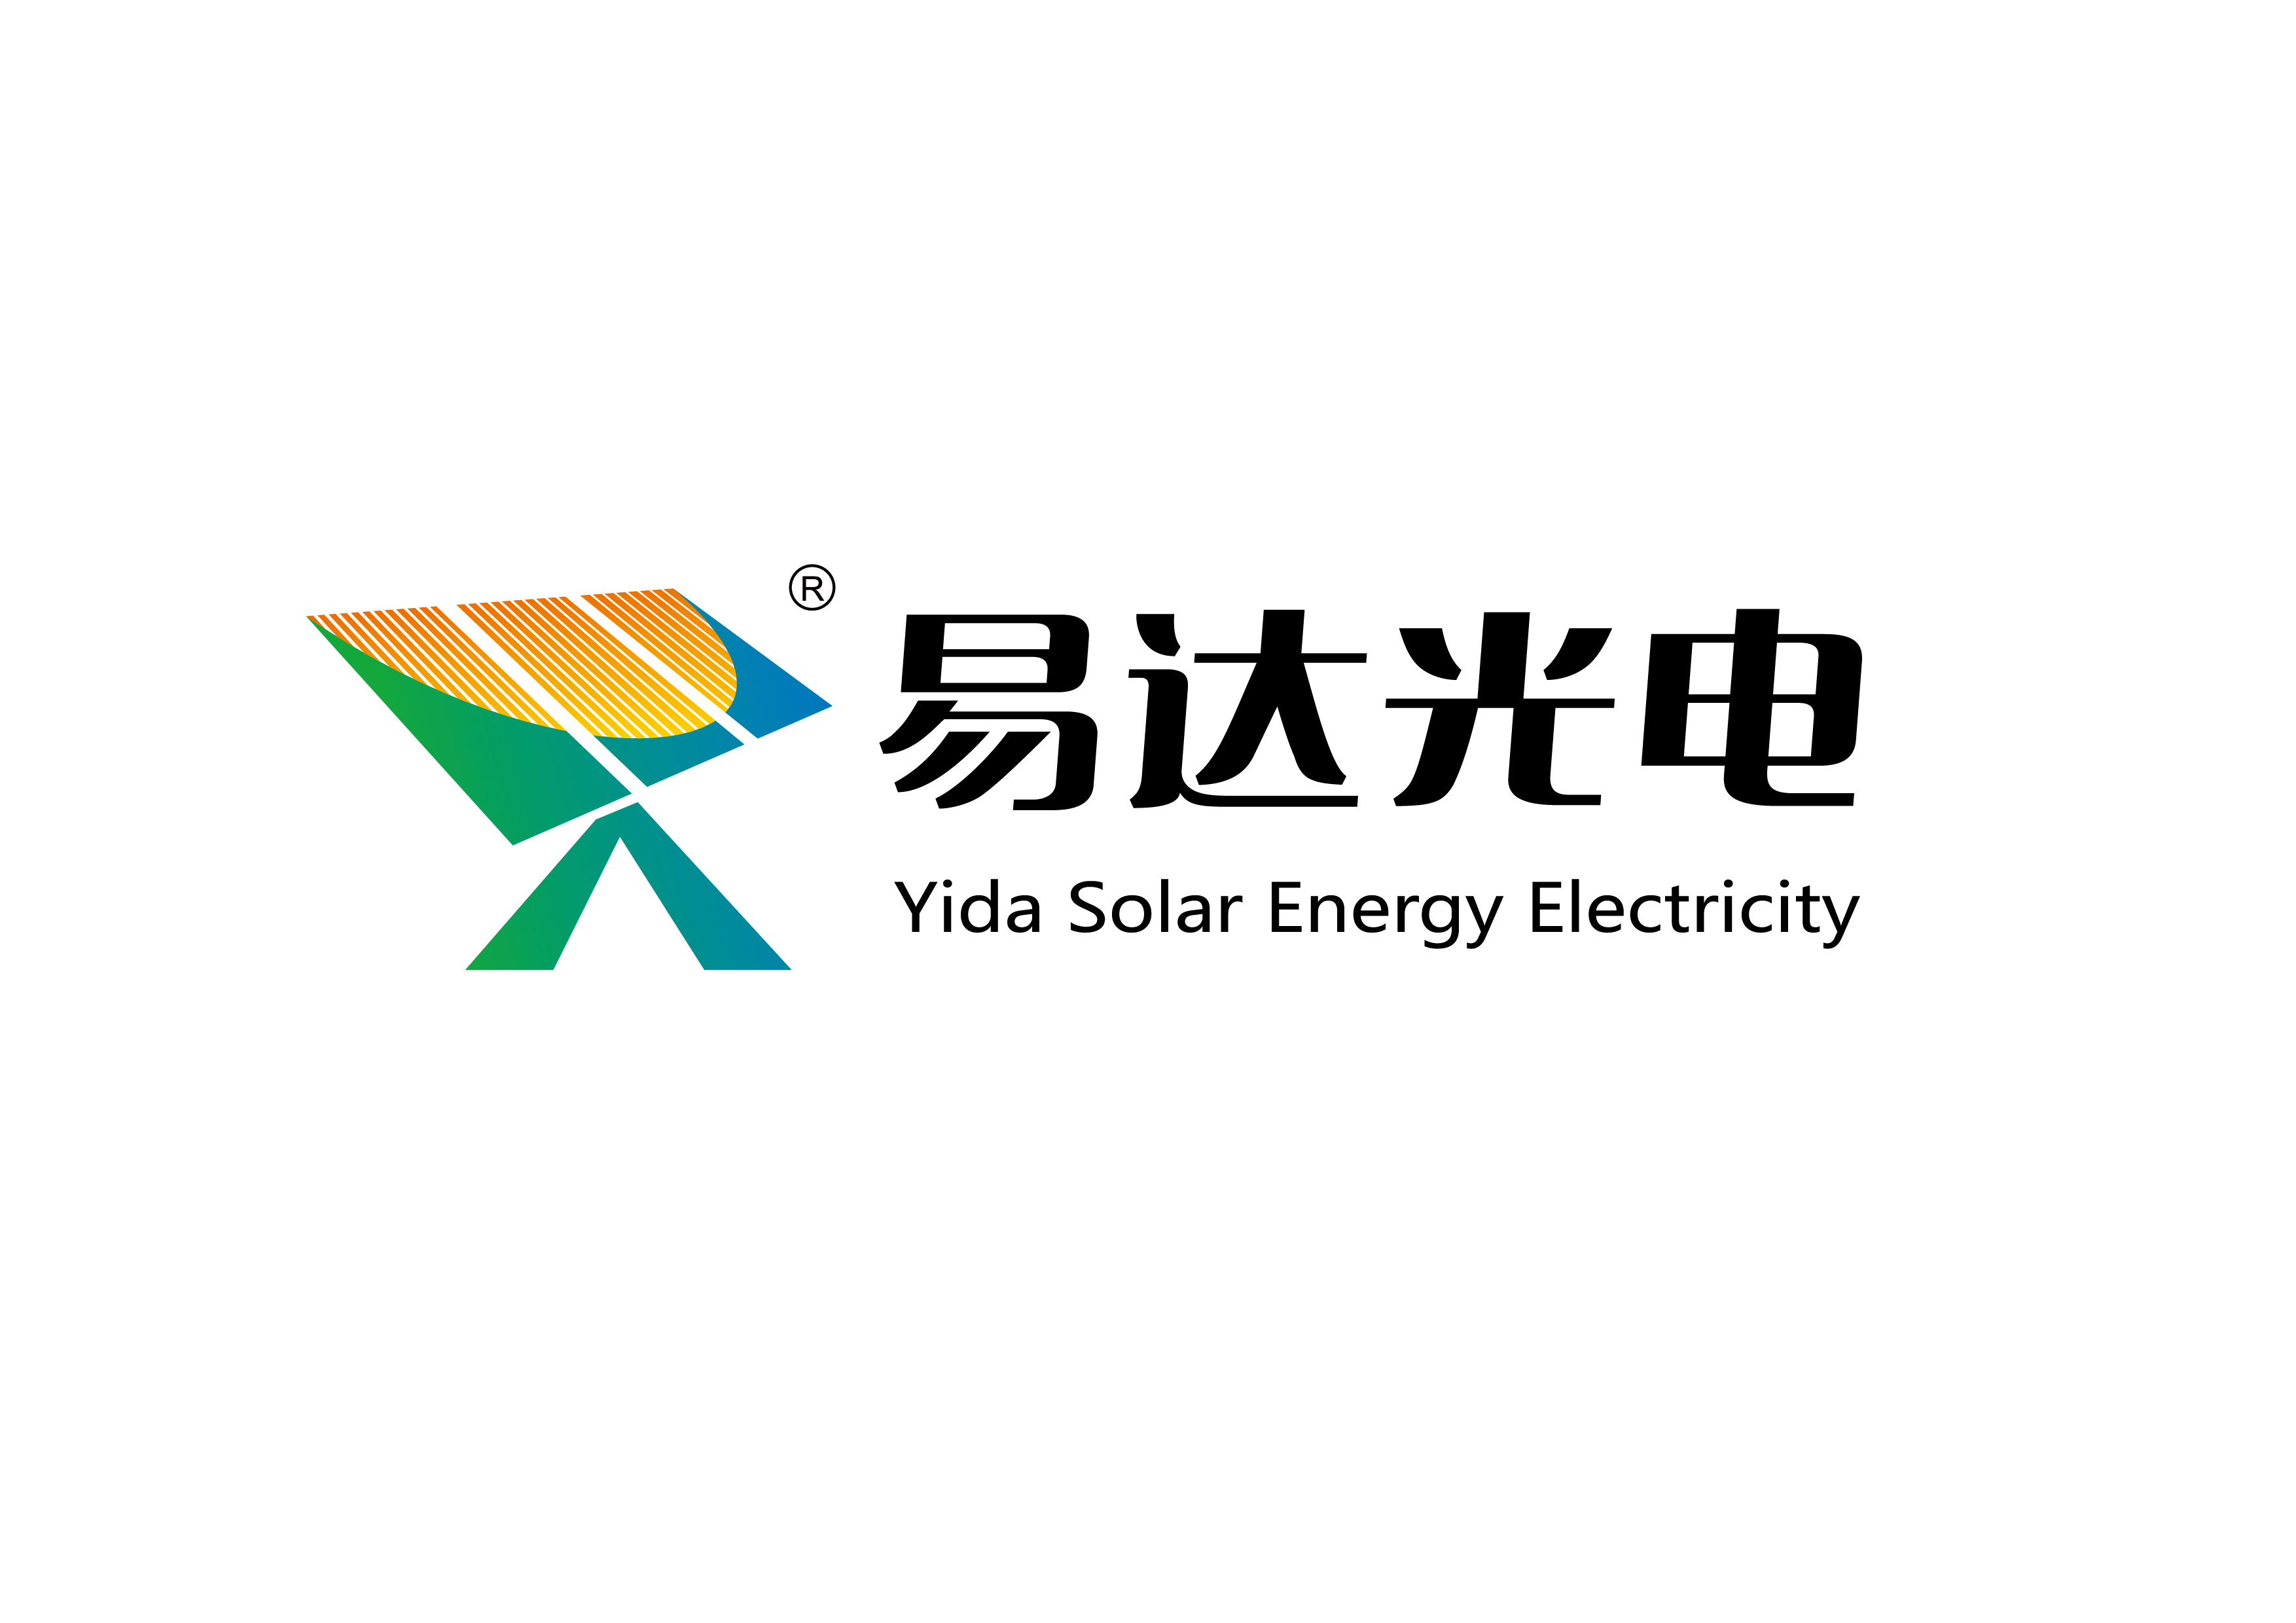 金华安装太阳能发电供暖 诚信为本 杭州易达光电供应